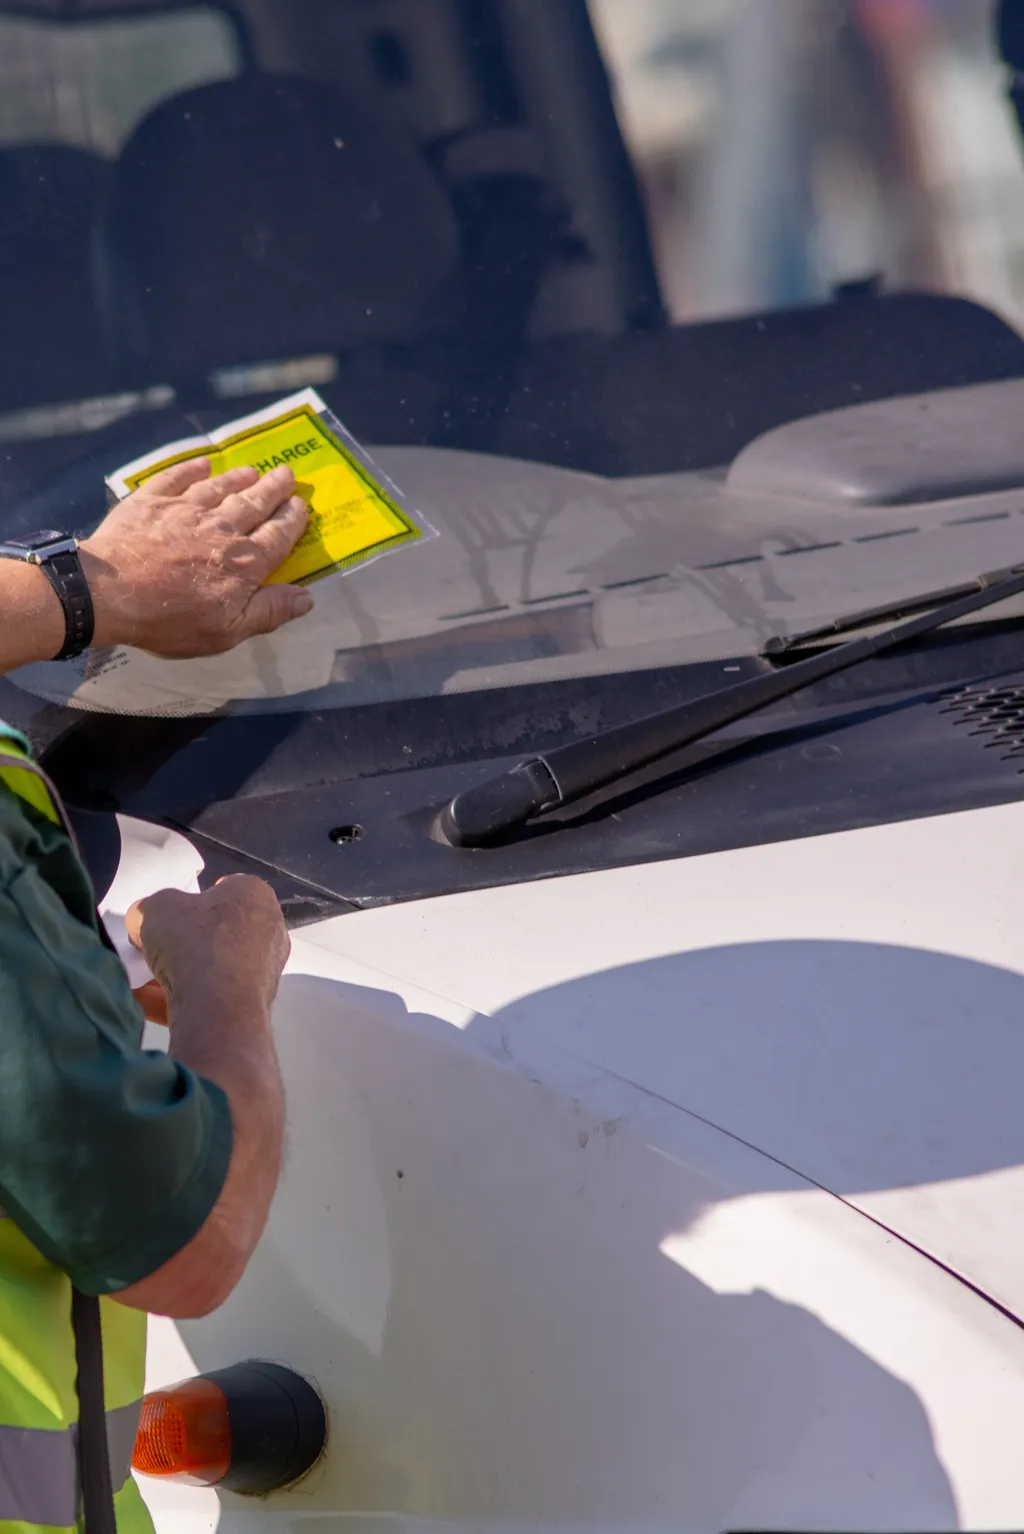 Parking enforcement workers

USA hamarosan megszűnő szakmák

Parkoló ellenőrök 